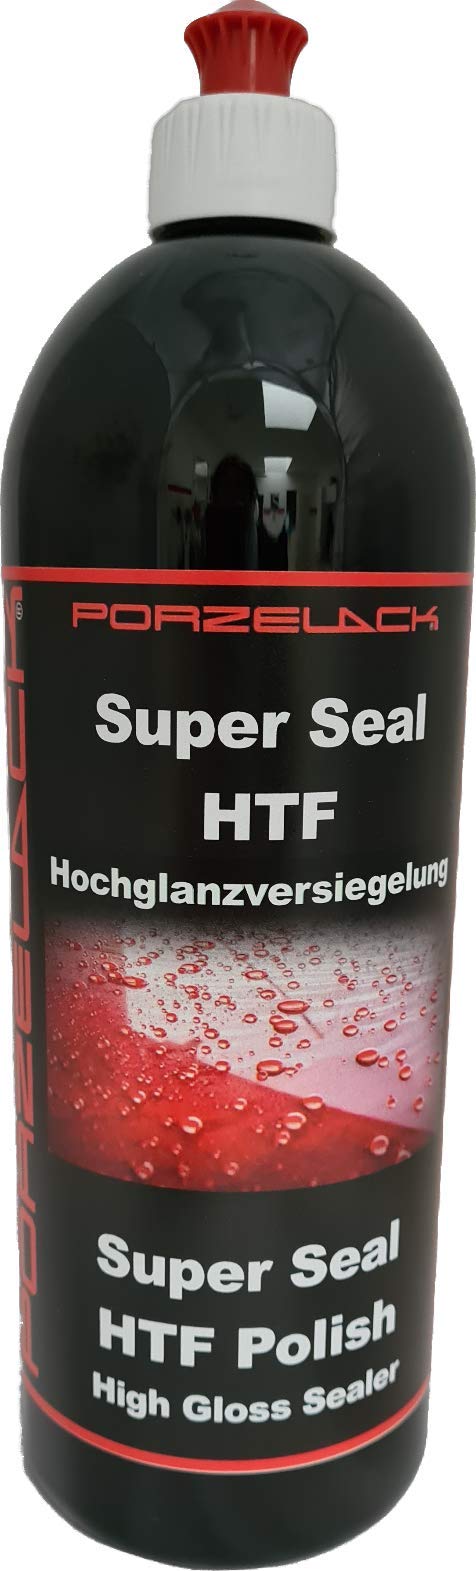 Porzelack Super Seal HTF, (1 Liter) von Porzelack